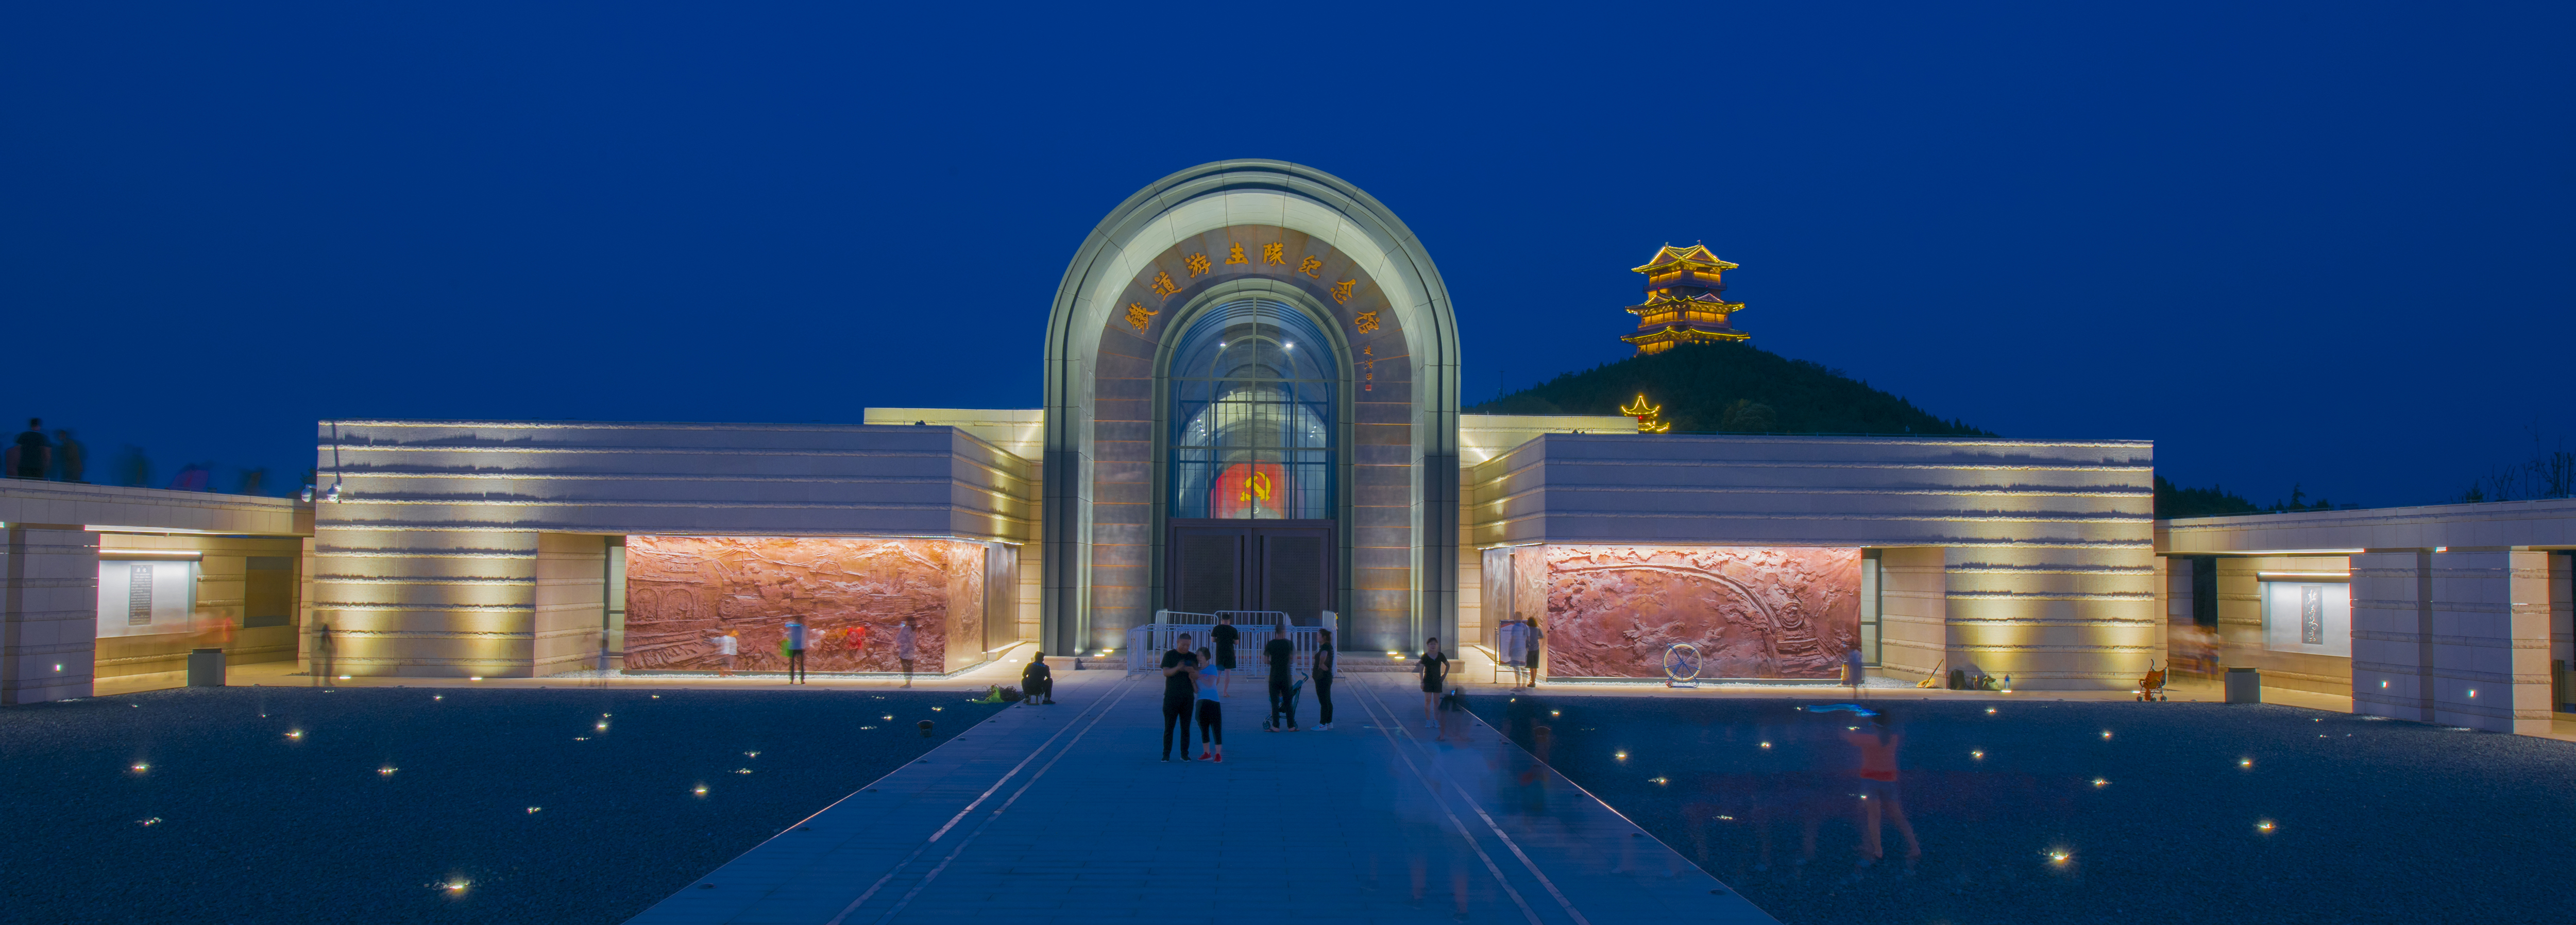 铁道游击队纪念馆是铁道游击队景区的核心建筑,由中国工程院院士崔愷